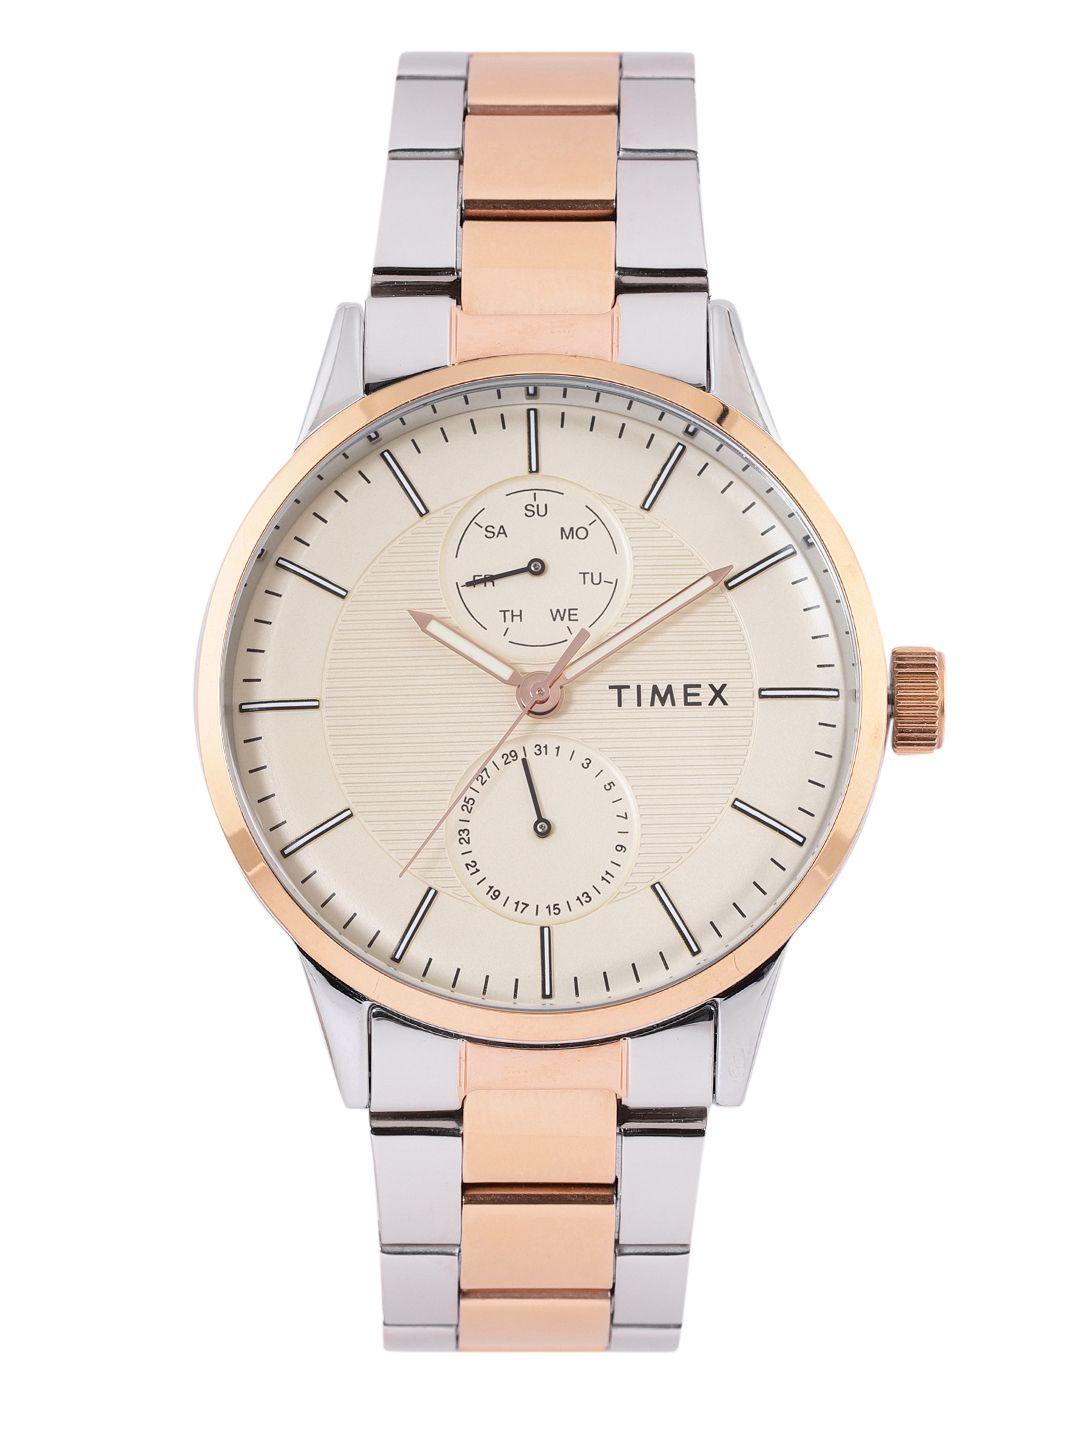 timex men beige multifunction analogue watch with additional strap tweg19902